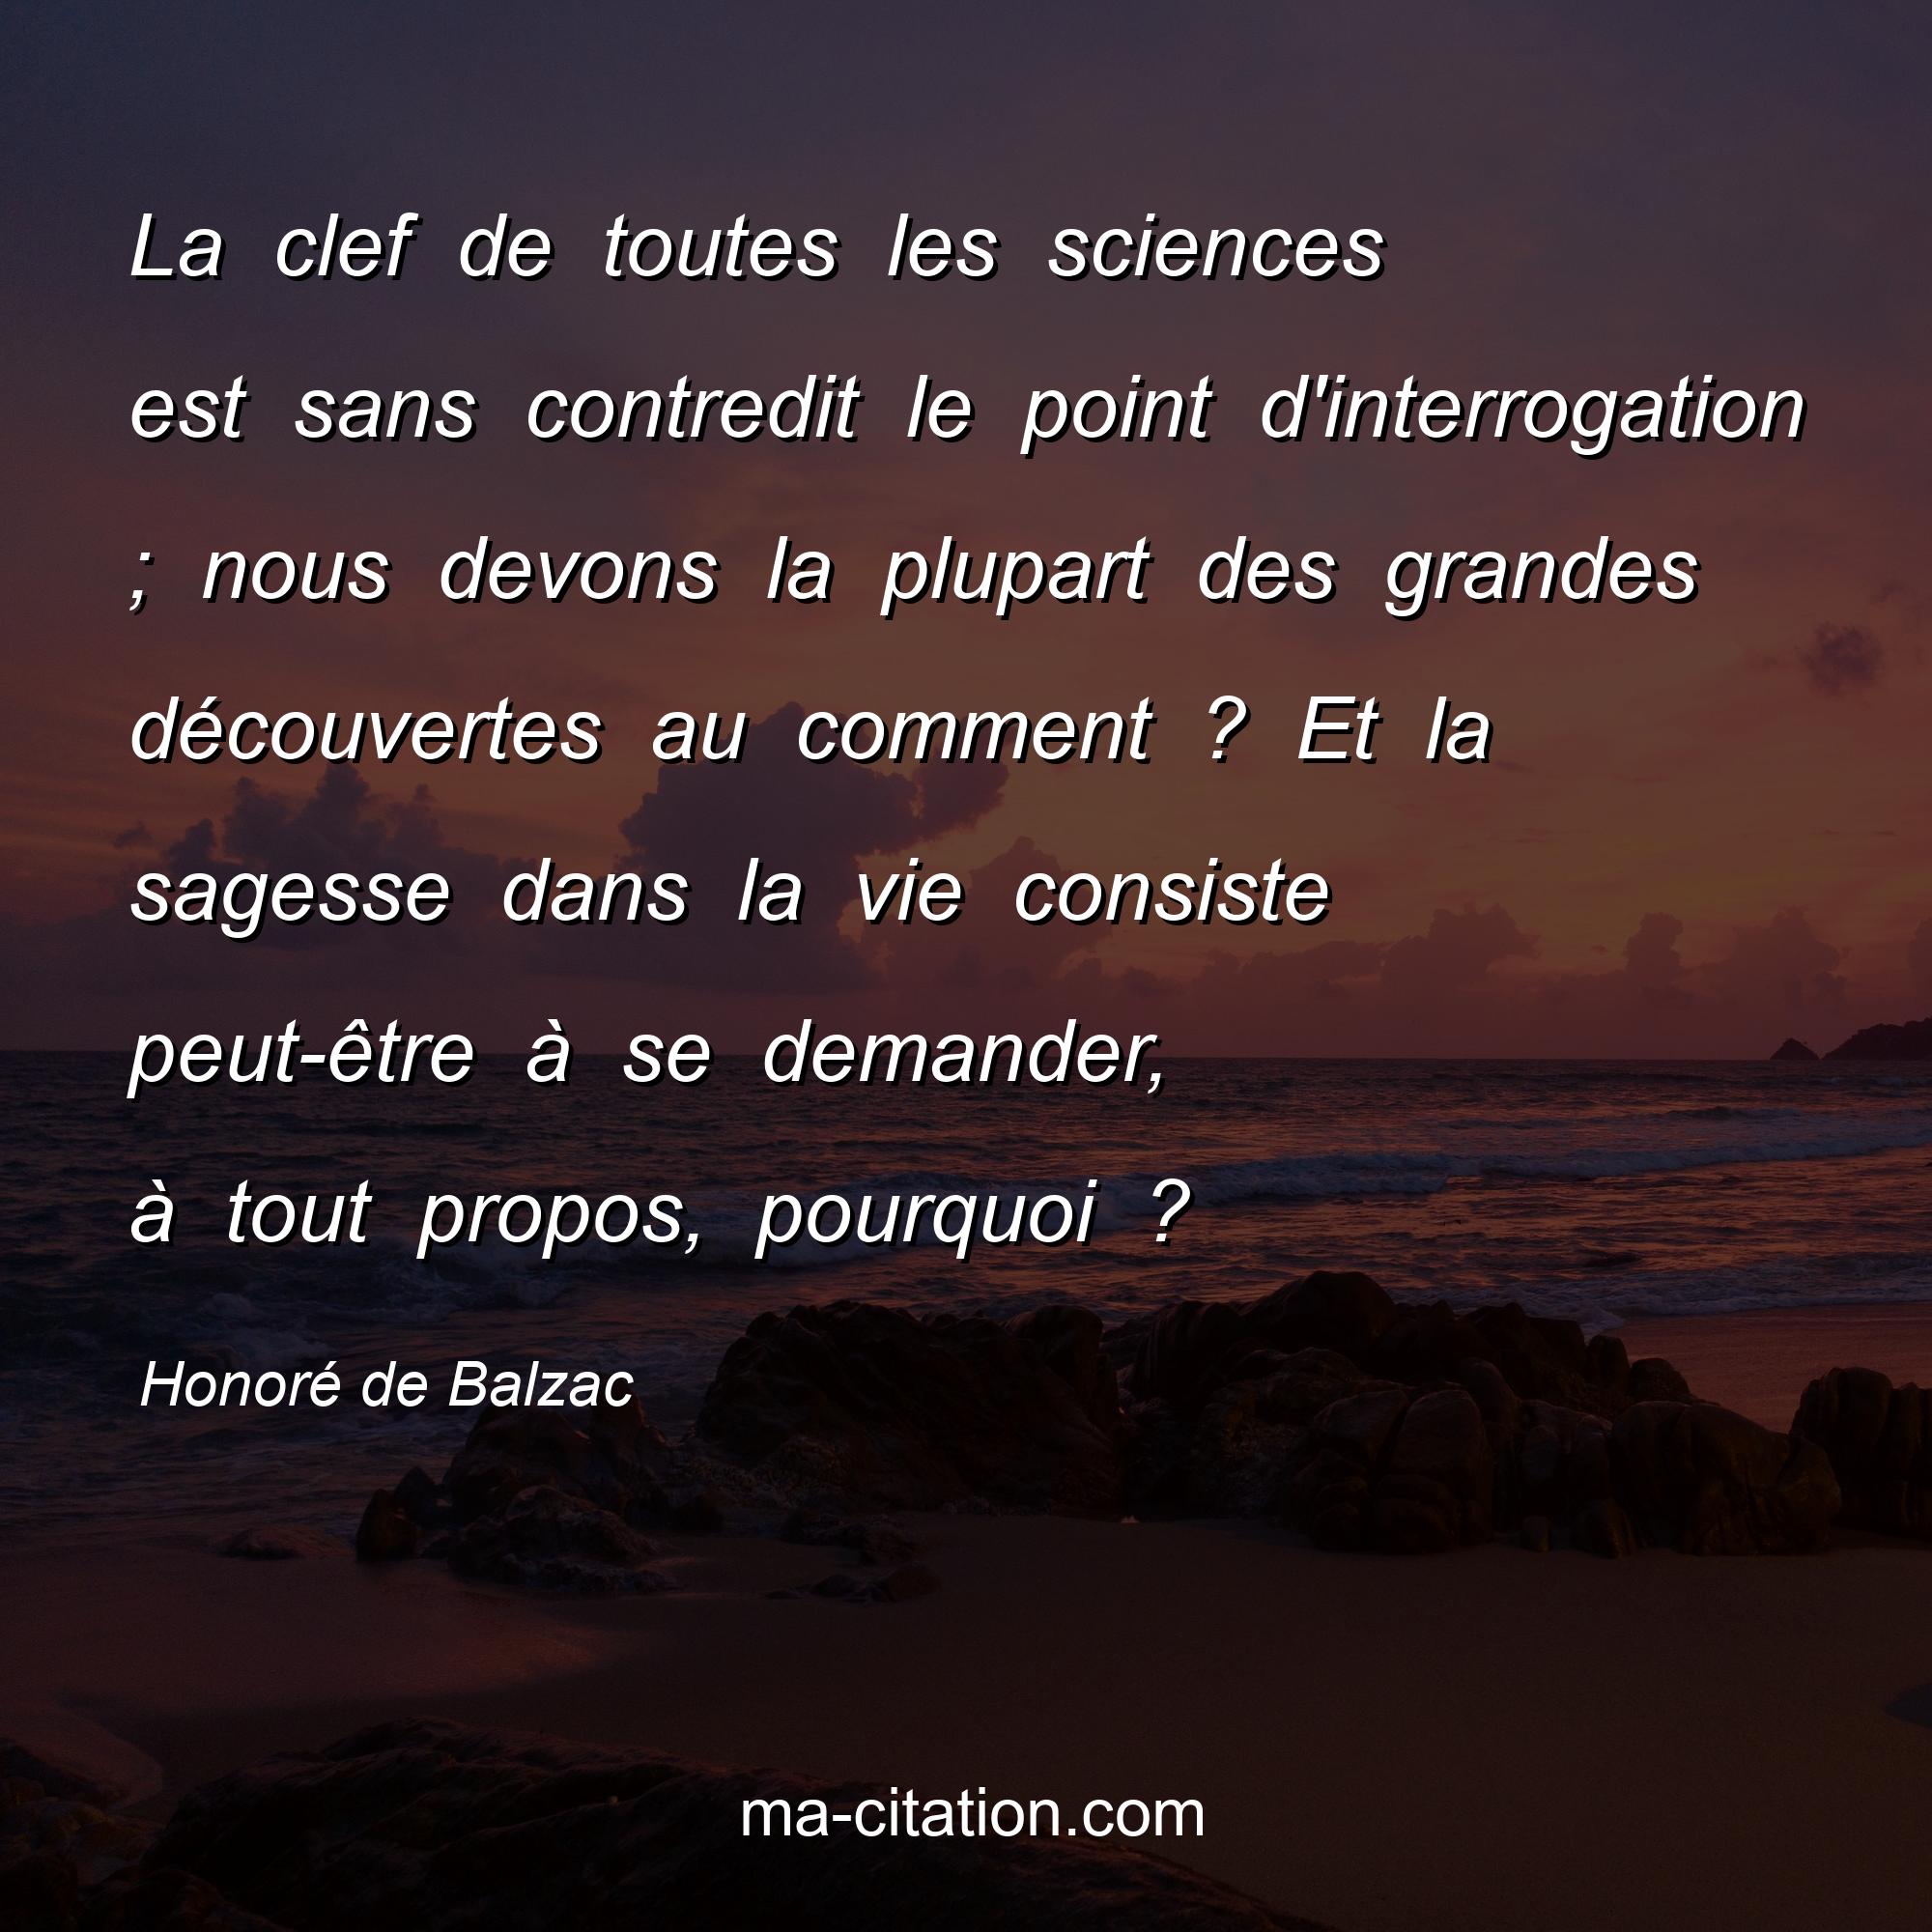 Honoré de Balzac : La clef de toutes les sciences est sans contredit le point d'interrogation ; nous devons la plupart des grandes découvertes au comment ? Et la sagesse dans la vie consiste peut-être à se demander, à tout propos, pourquoi ?